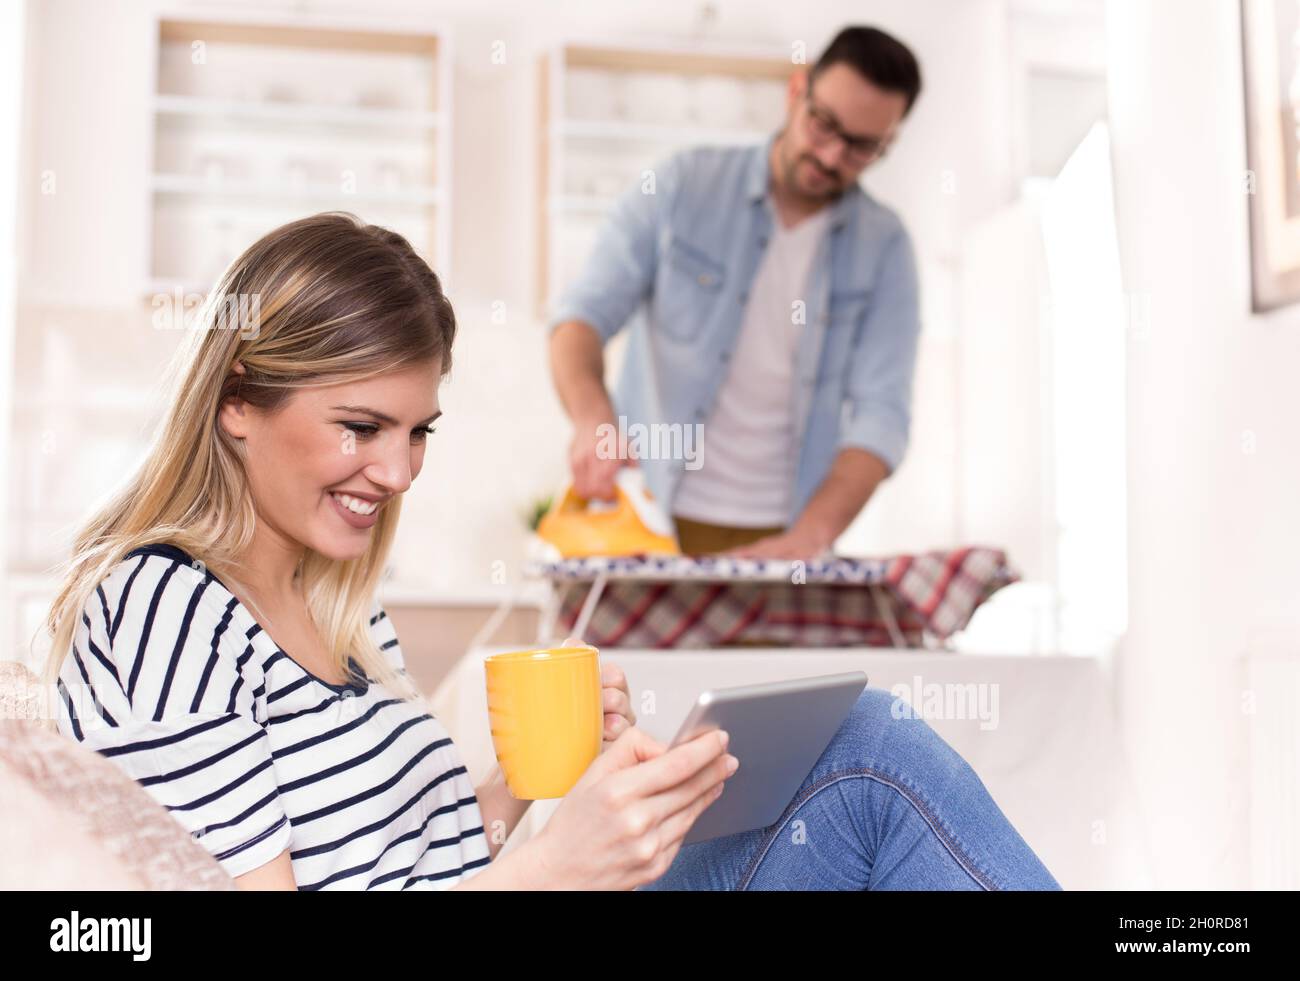 Schöne junge Frau, die sich auf dem Sofa ausruht und auf das Tablet schaut, während der Mann ihr Hemd im Hintergrund bügelt. Ehemann macht Aufgaben Konzept Stockfoto